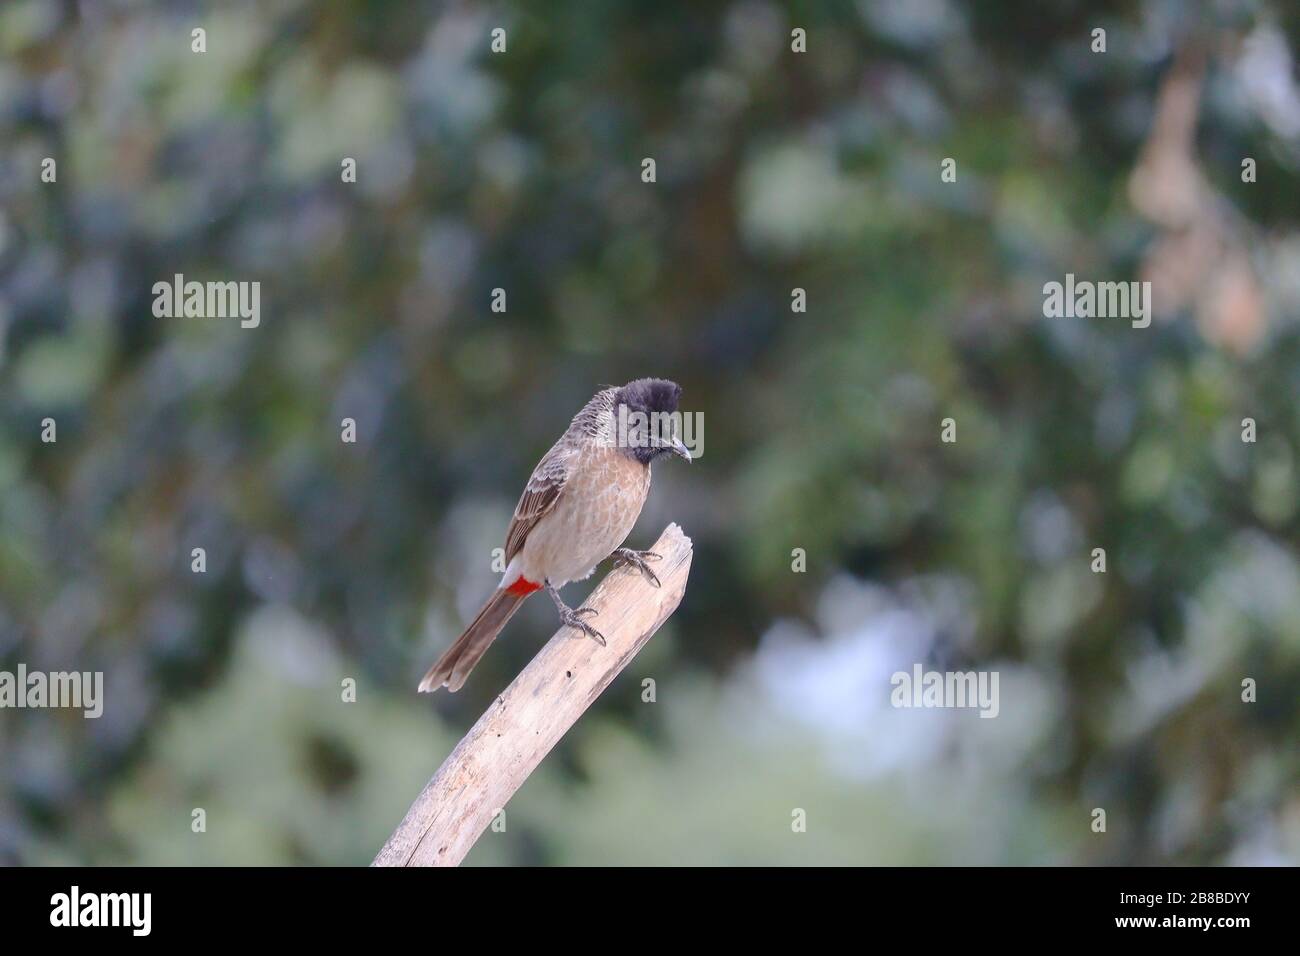 Un taubul mâle à caprice noire perché tige d'arbre sèche dans la nature, observation des oiseaux Banque D'Images